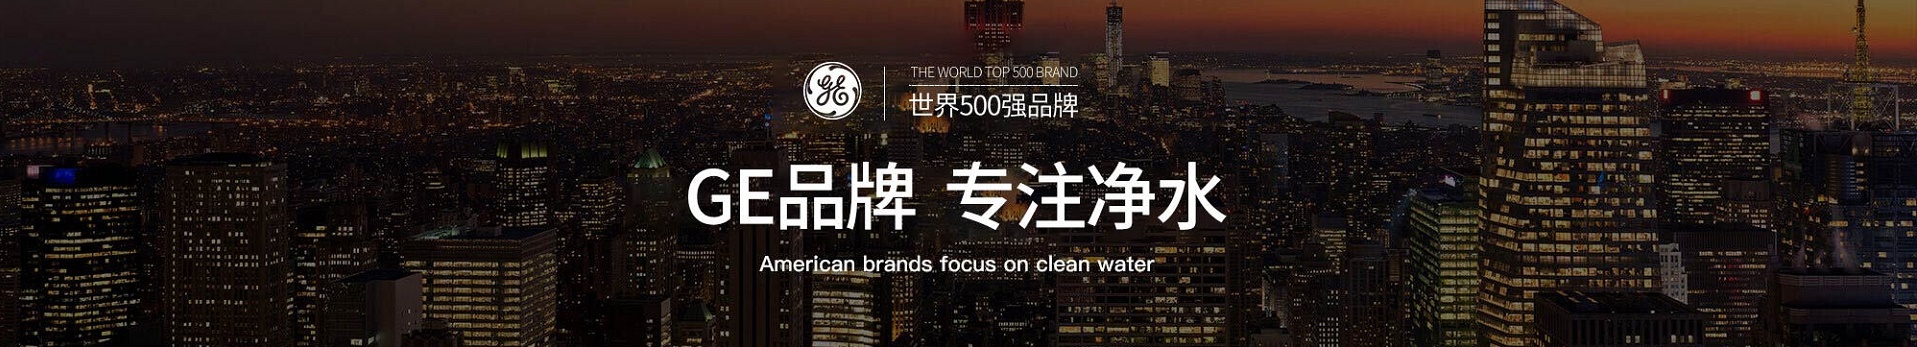 中国高端品牌英尼克新一代商务直饮水机发布